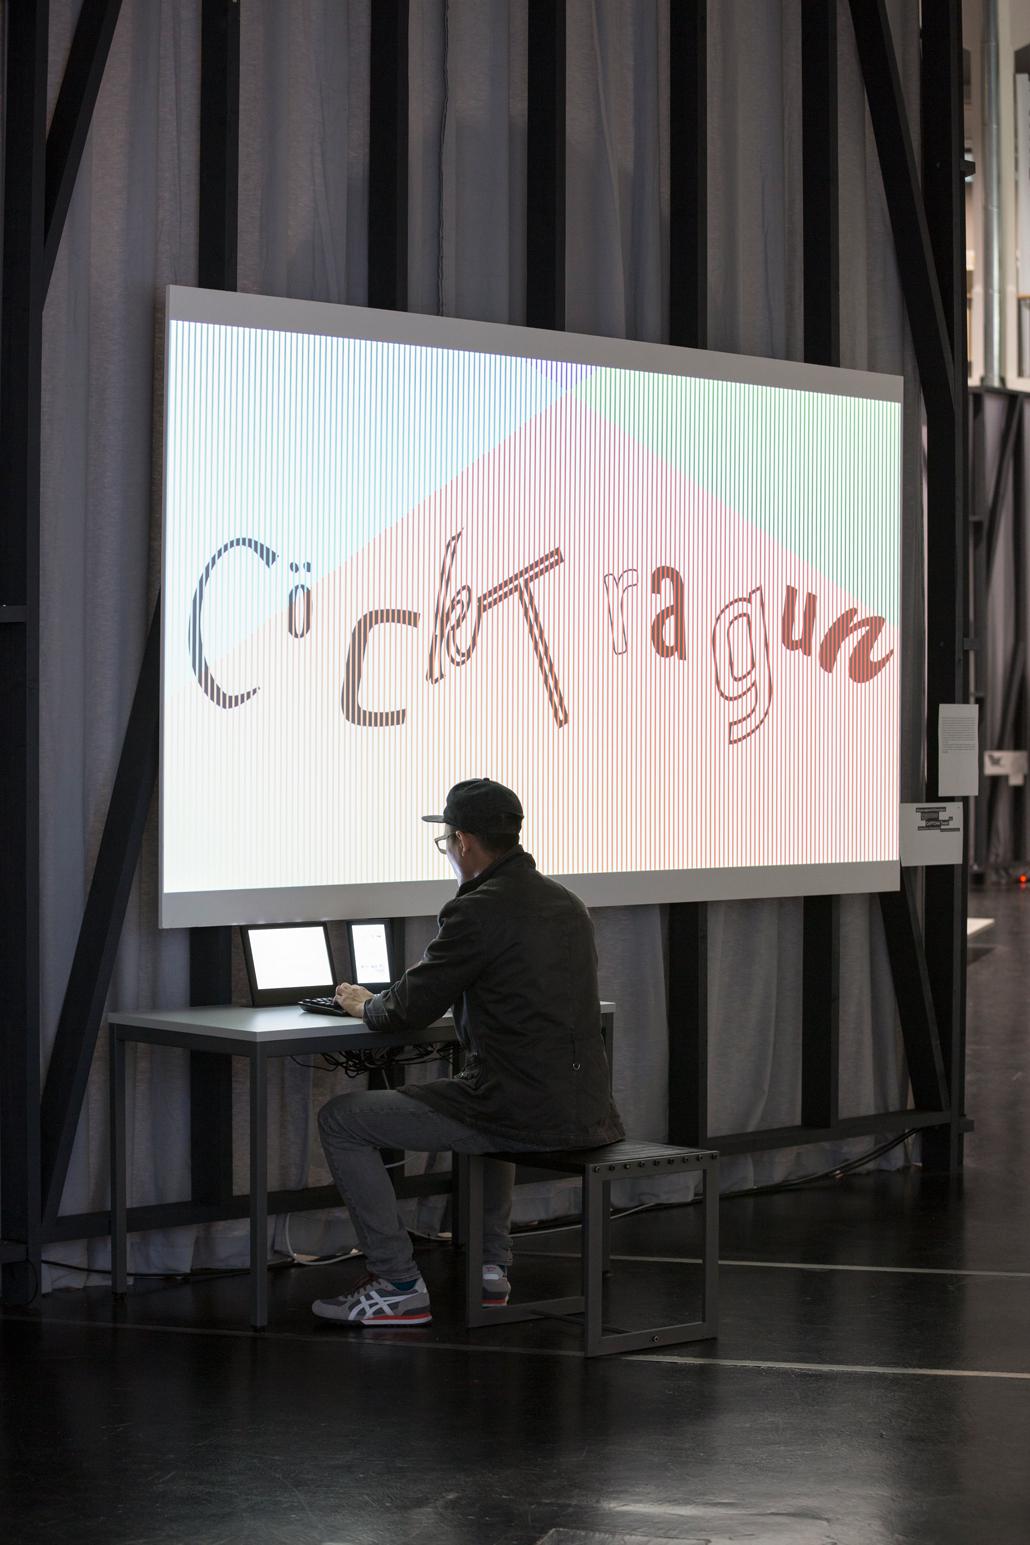 Ein Mann sitzt vor einem PC. Auf der Leinwand über ihm steht "CöcKtragun"